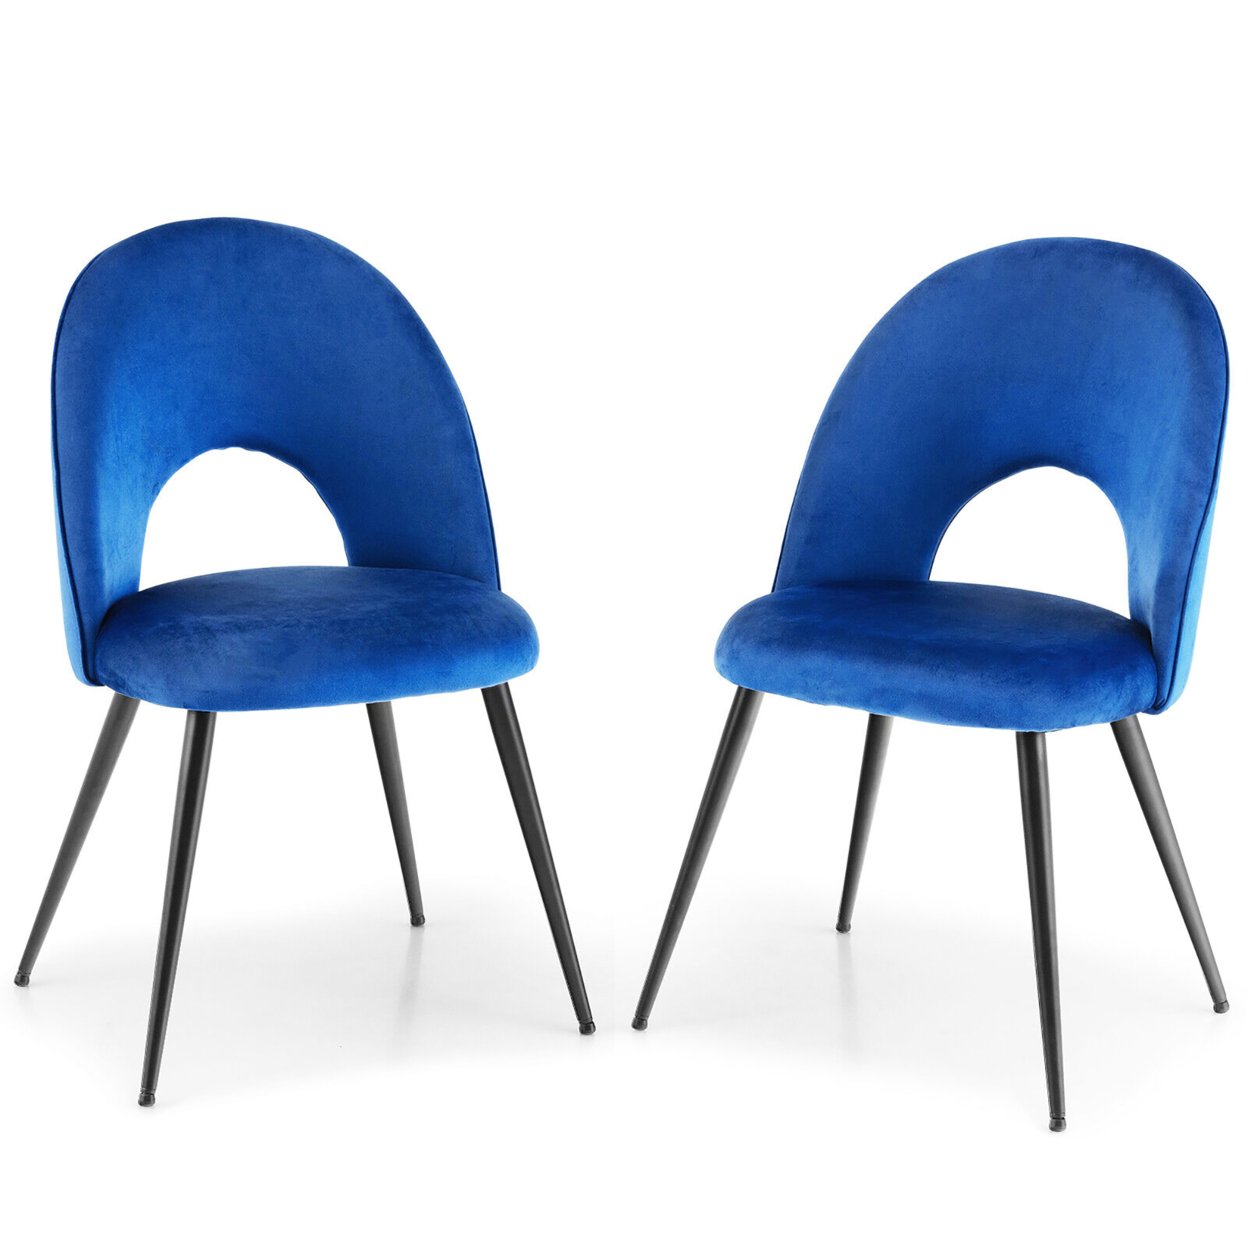 Dining Chair Set Of 2 Velvet Upholstered Side Chair W/ Metal Base For Living Room - Blue